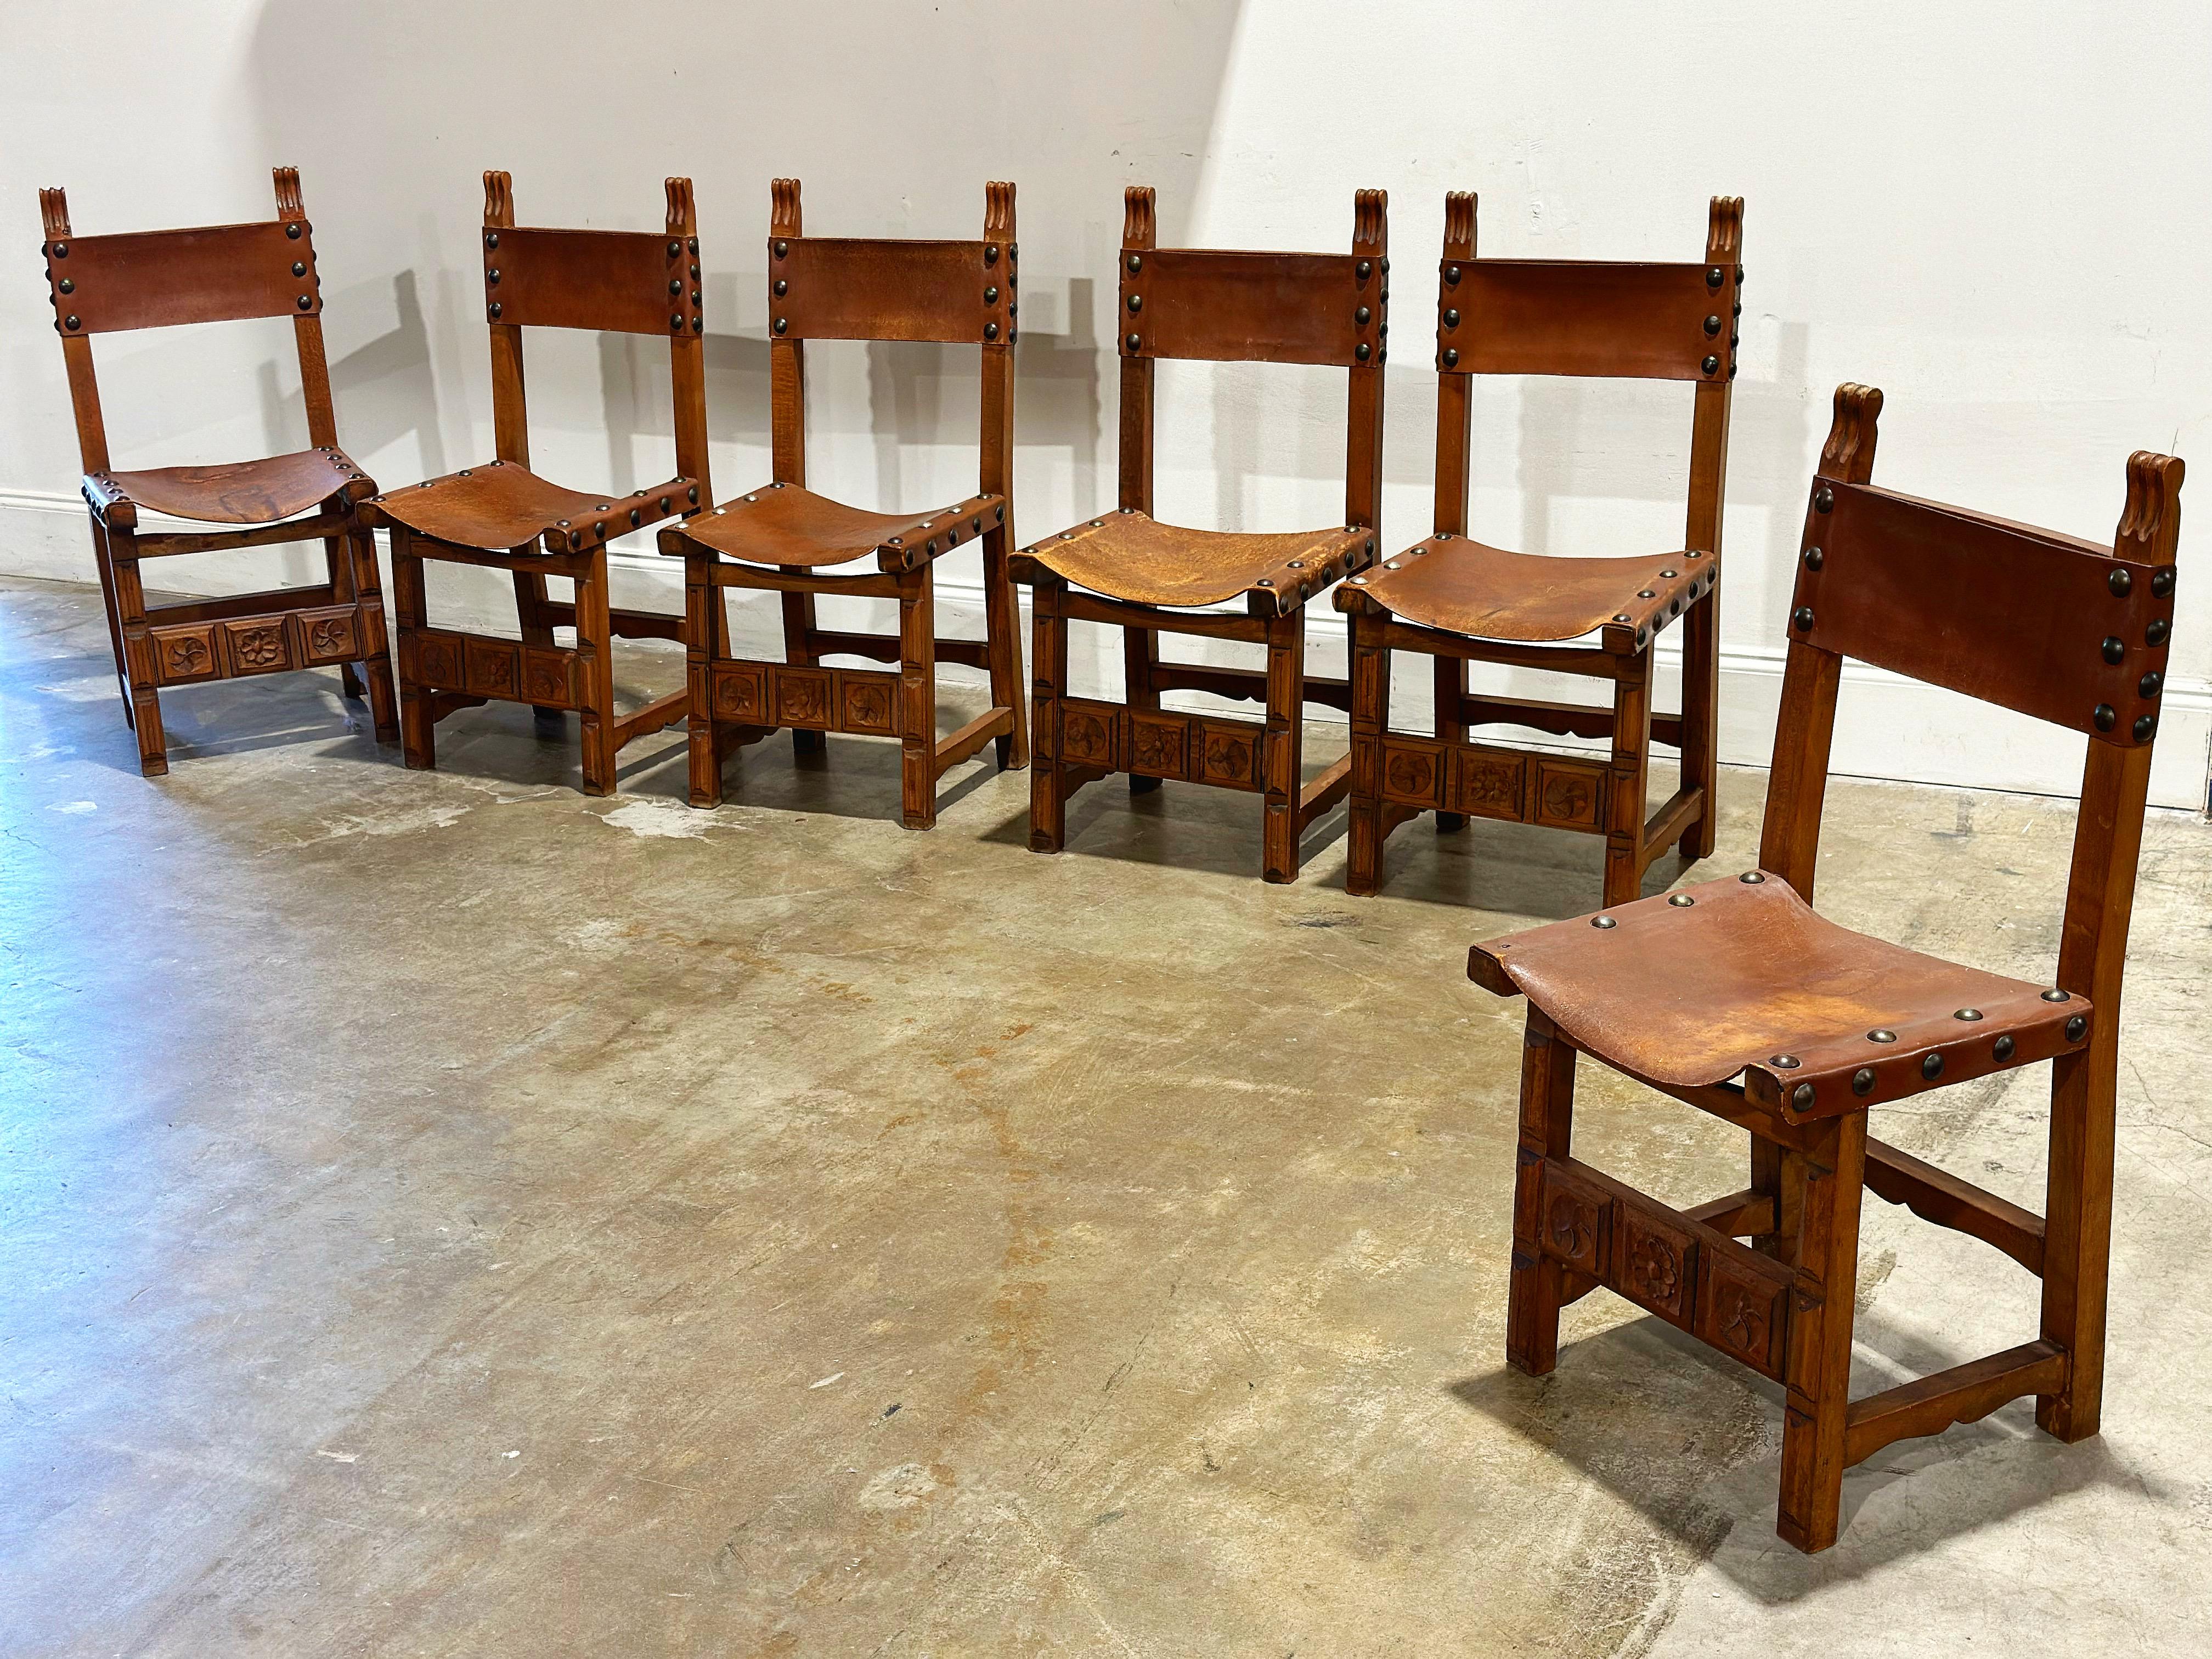 Satz von 6 Esszimmerstühlen im Brutalismus-Stil der Jahrhundertmitte. Sitz und Rückenlehne aus Leder auf schweren geschnitzten Eichenrahmen. Stahlbolzen. In beeindruckendem Originalzustand mit geringen Gebrauchsspuren. Die Rahmen sind solide und